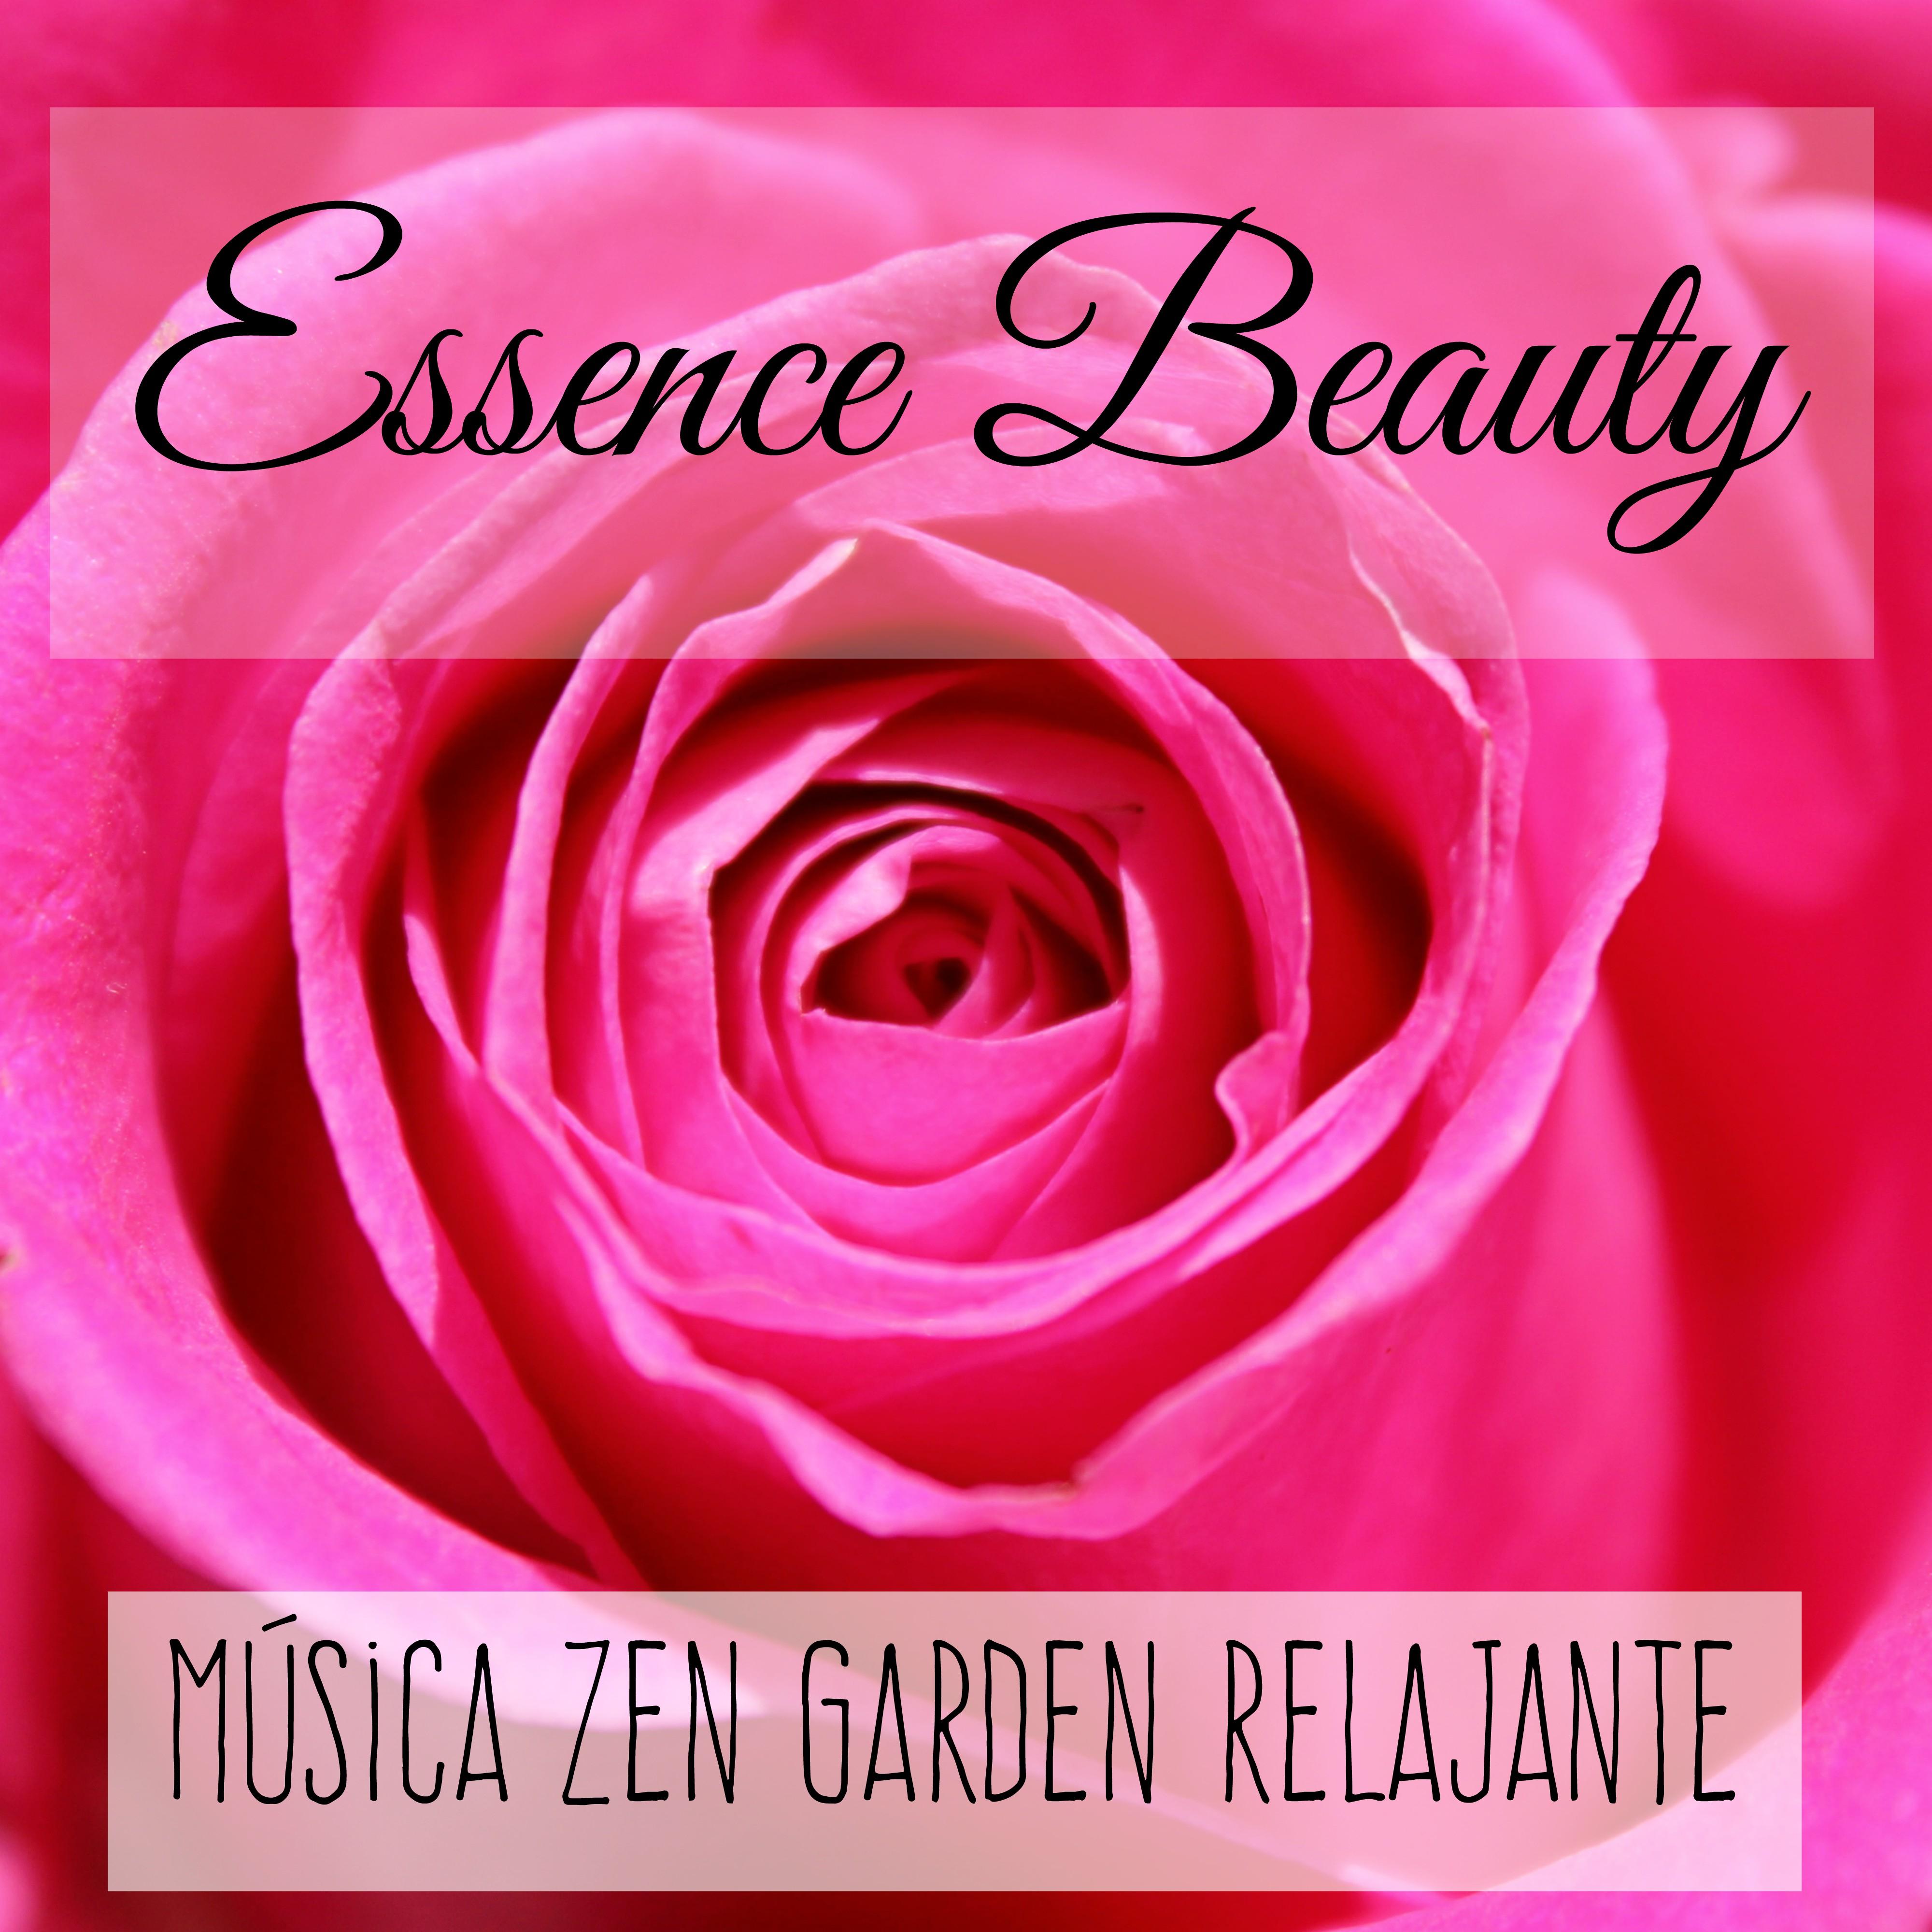 Essence Beauty - Música Zen Garden Relajante para Mejorar la Concentración Terapia de Masajes Yoga Chakras con Sonidos de la Naturaleza Instrumentales Espirituales